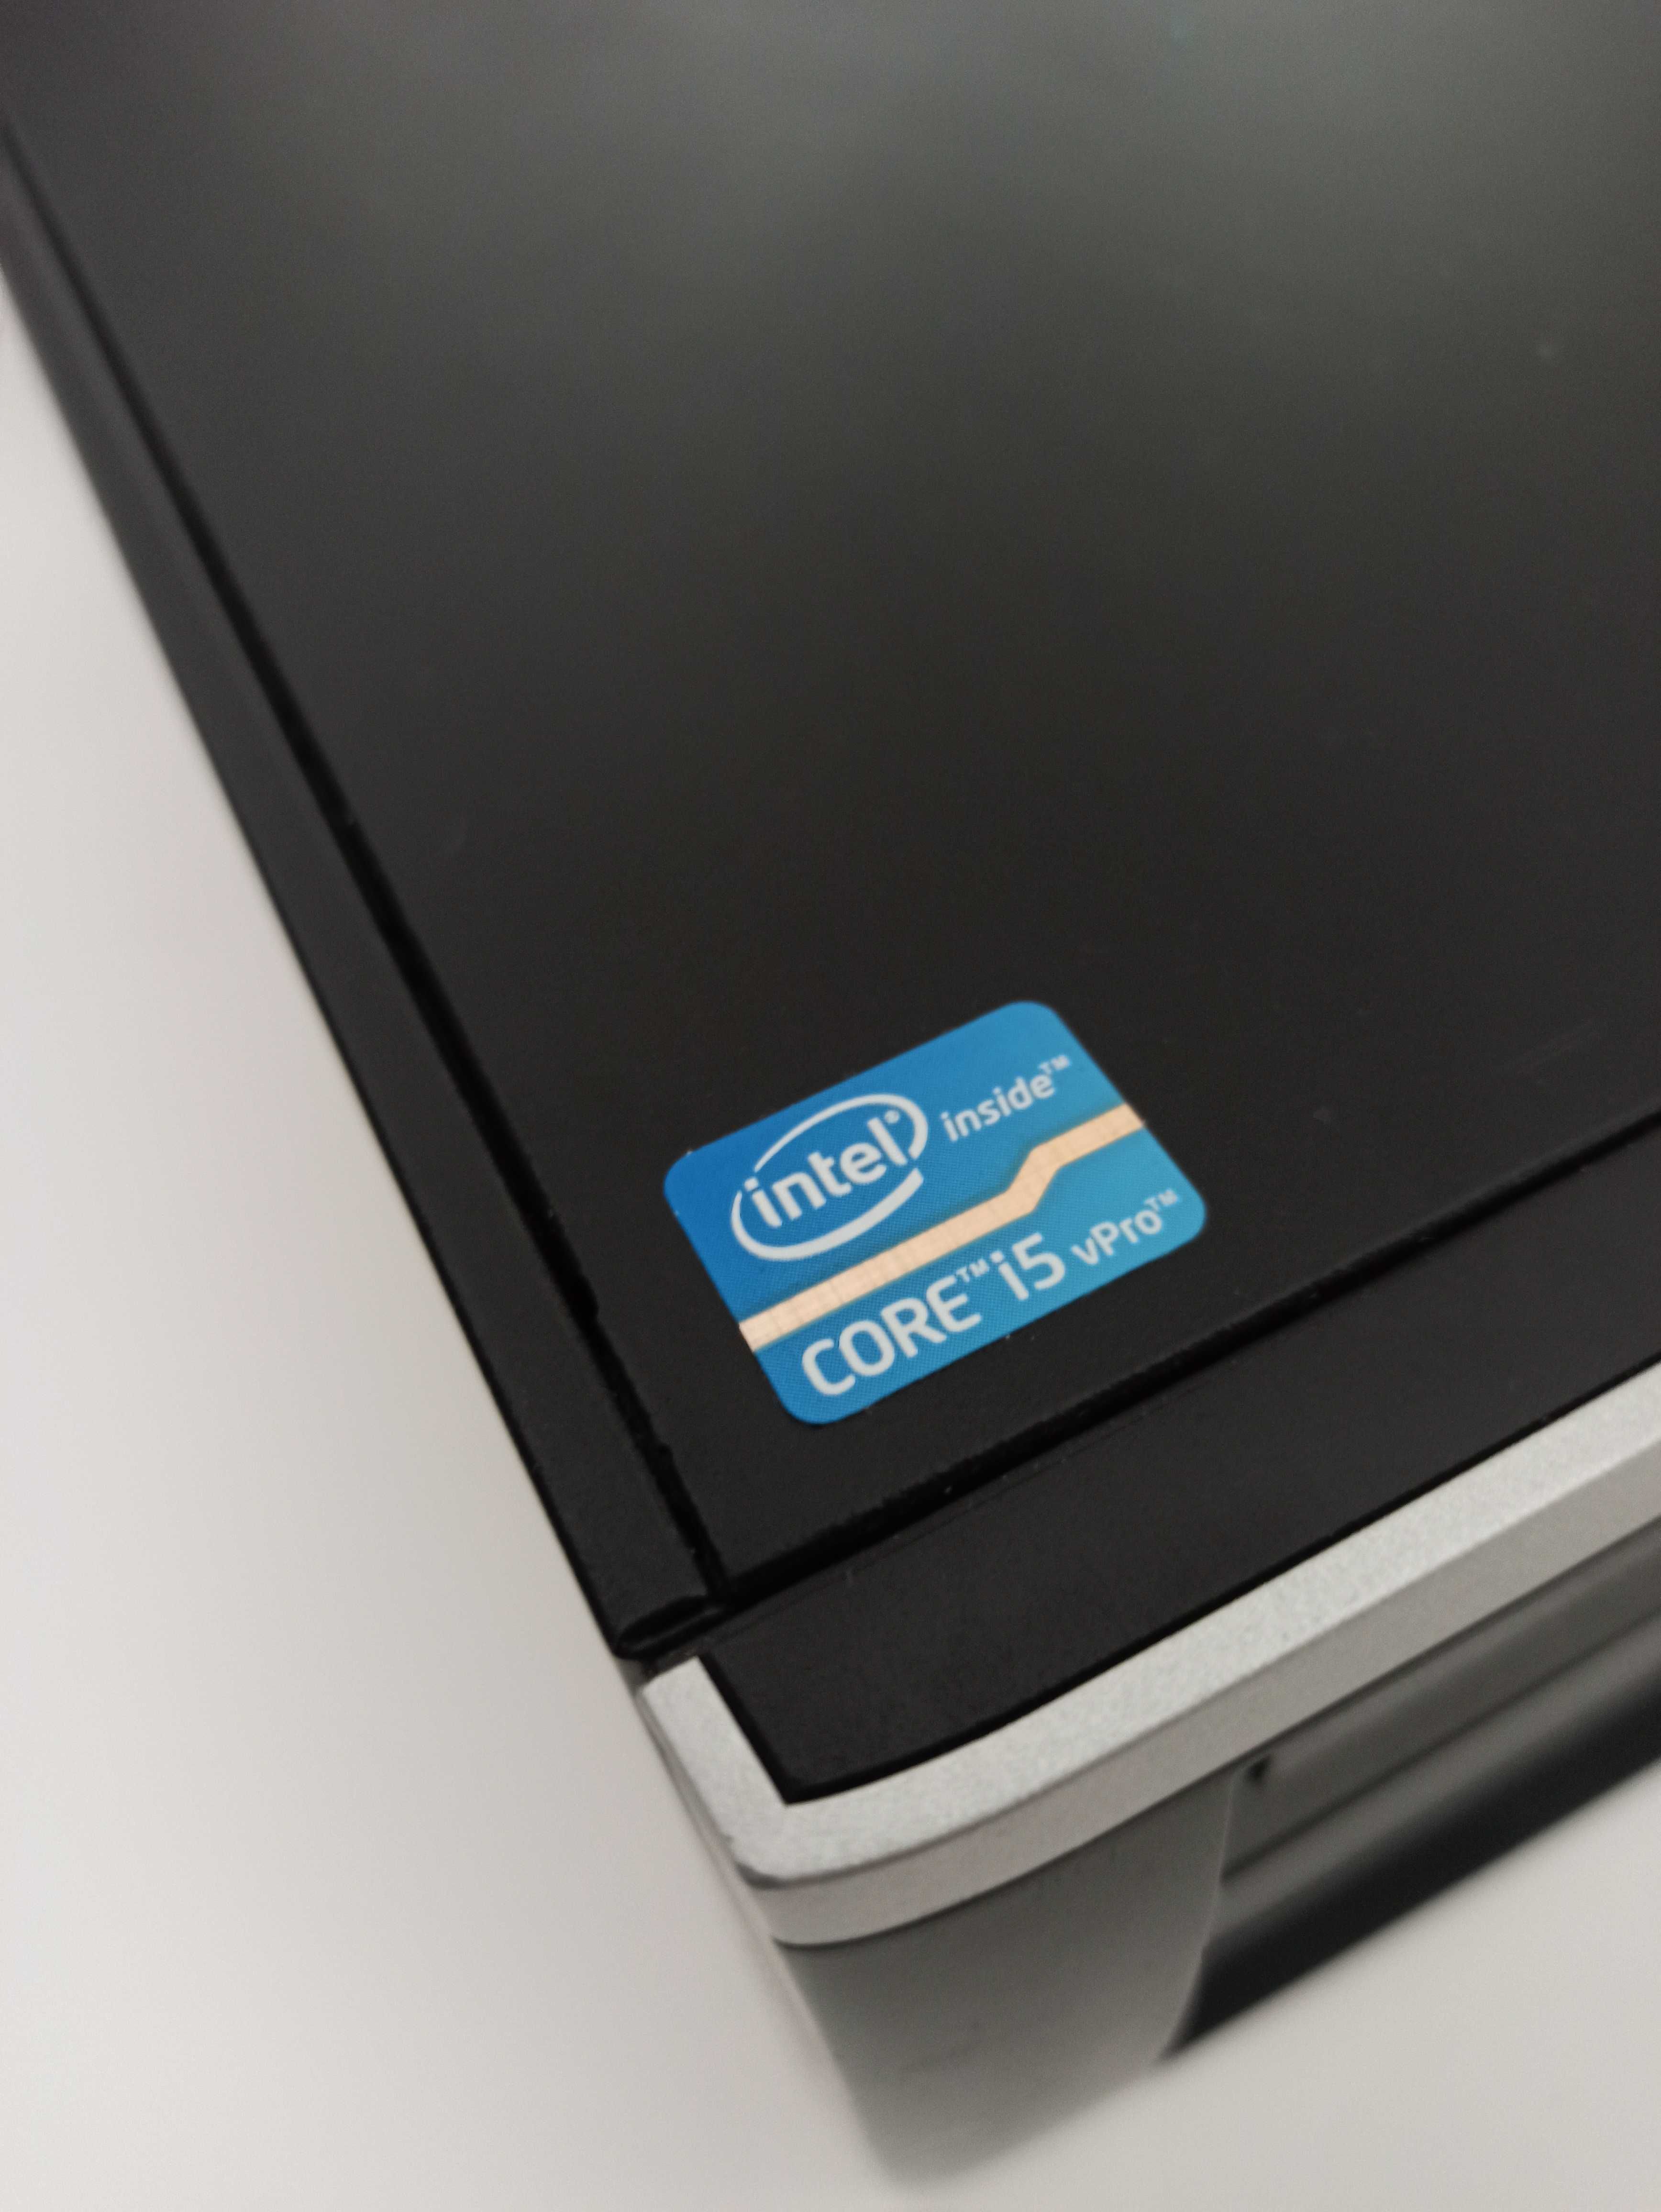 HP 8300 sff Intel core-i5, RAM 8GB DDR3, HD 240GB